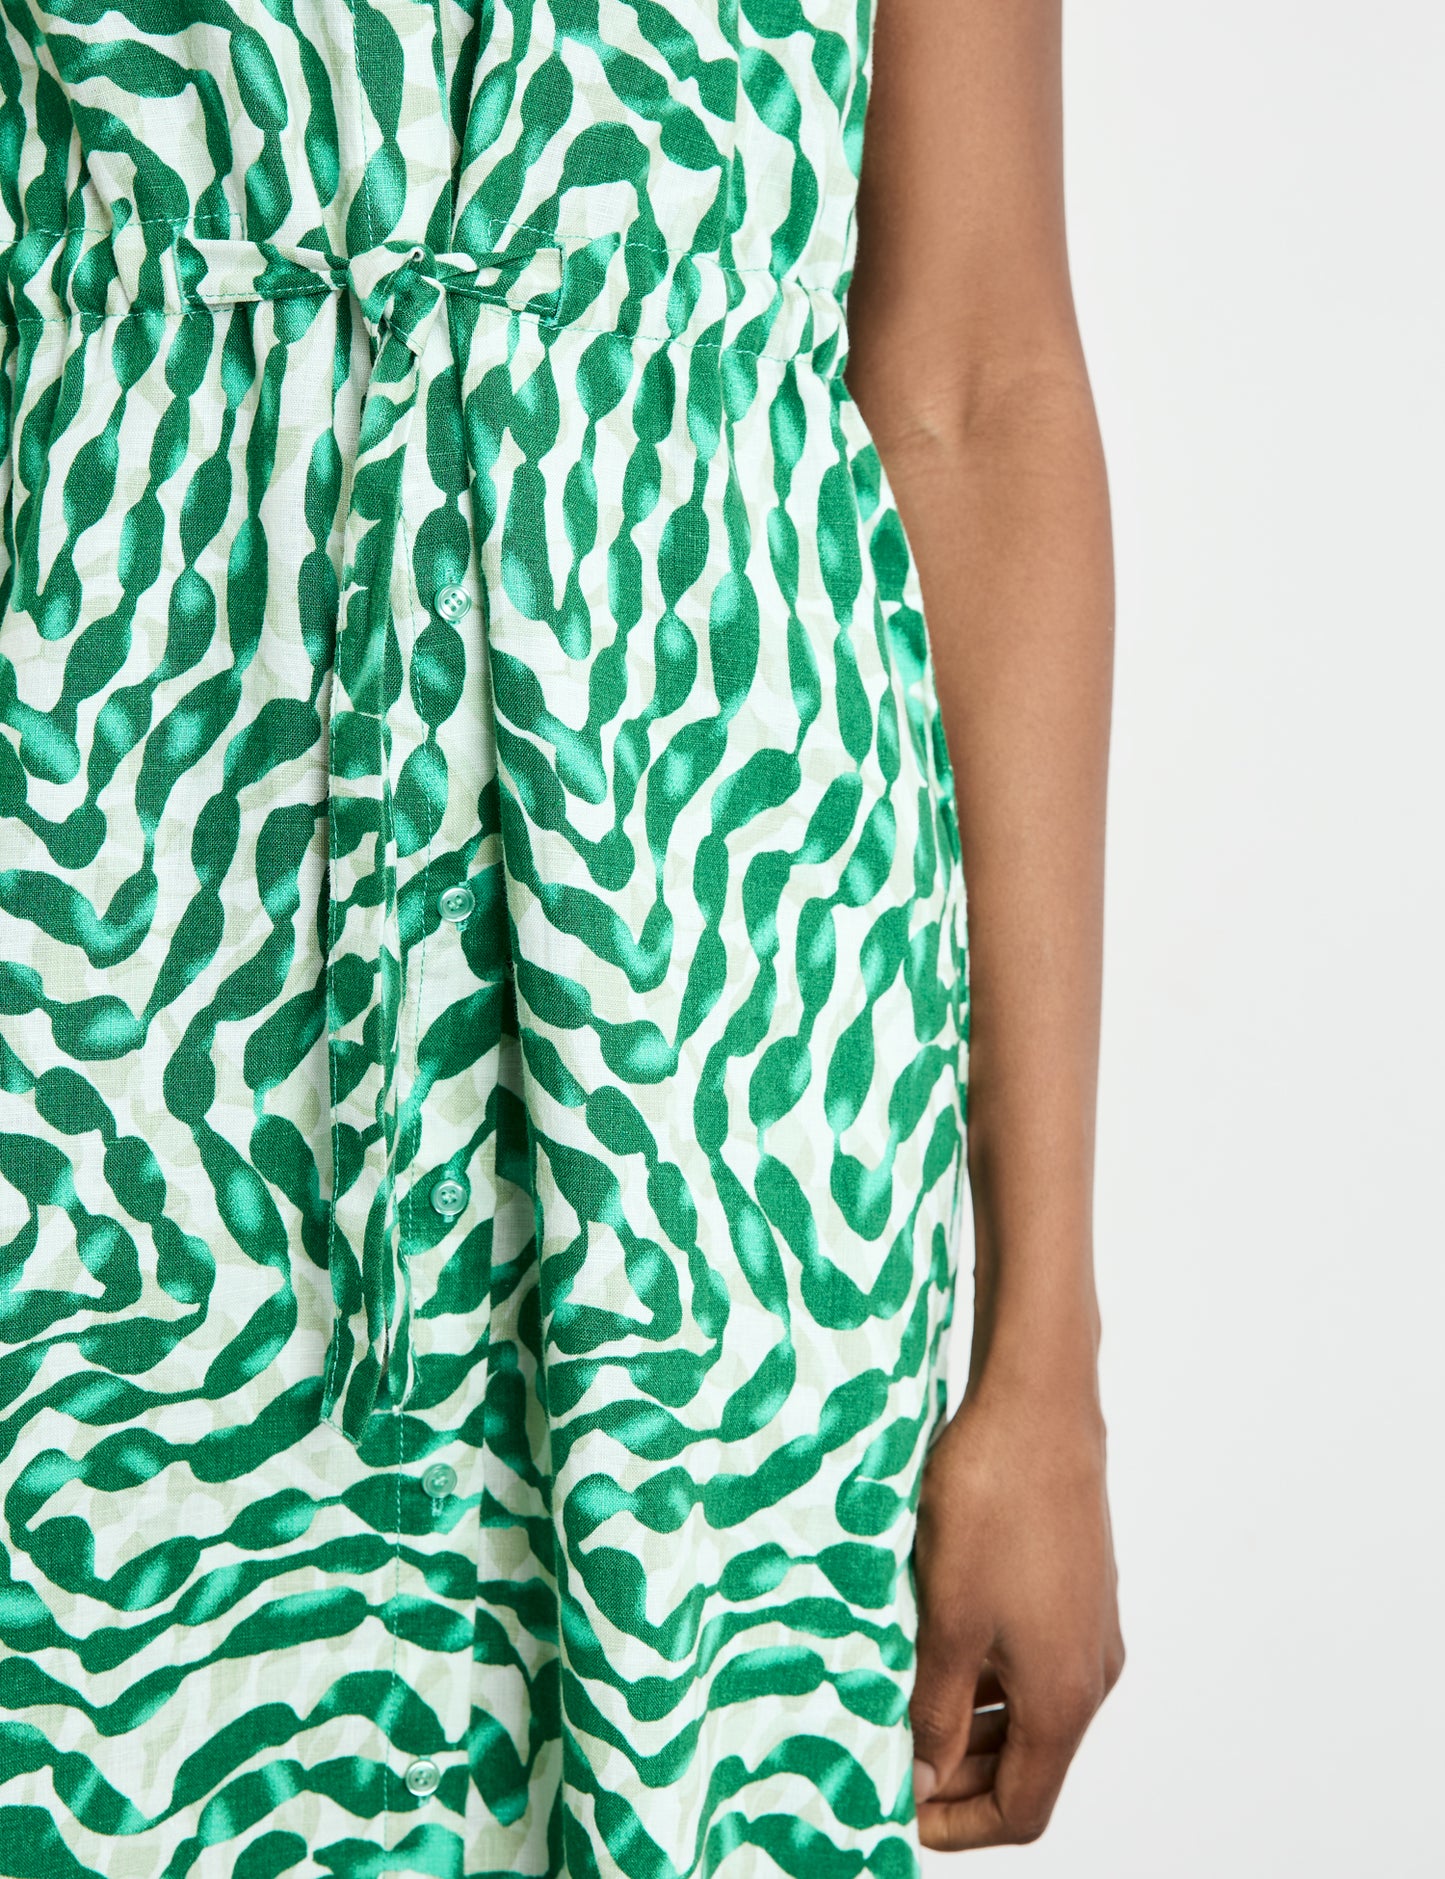 Gerry Weber Short Sleeve Green Print Dress